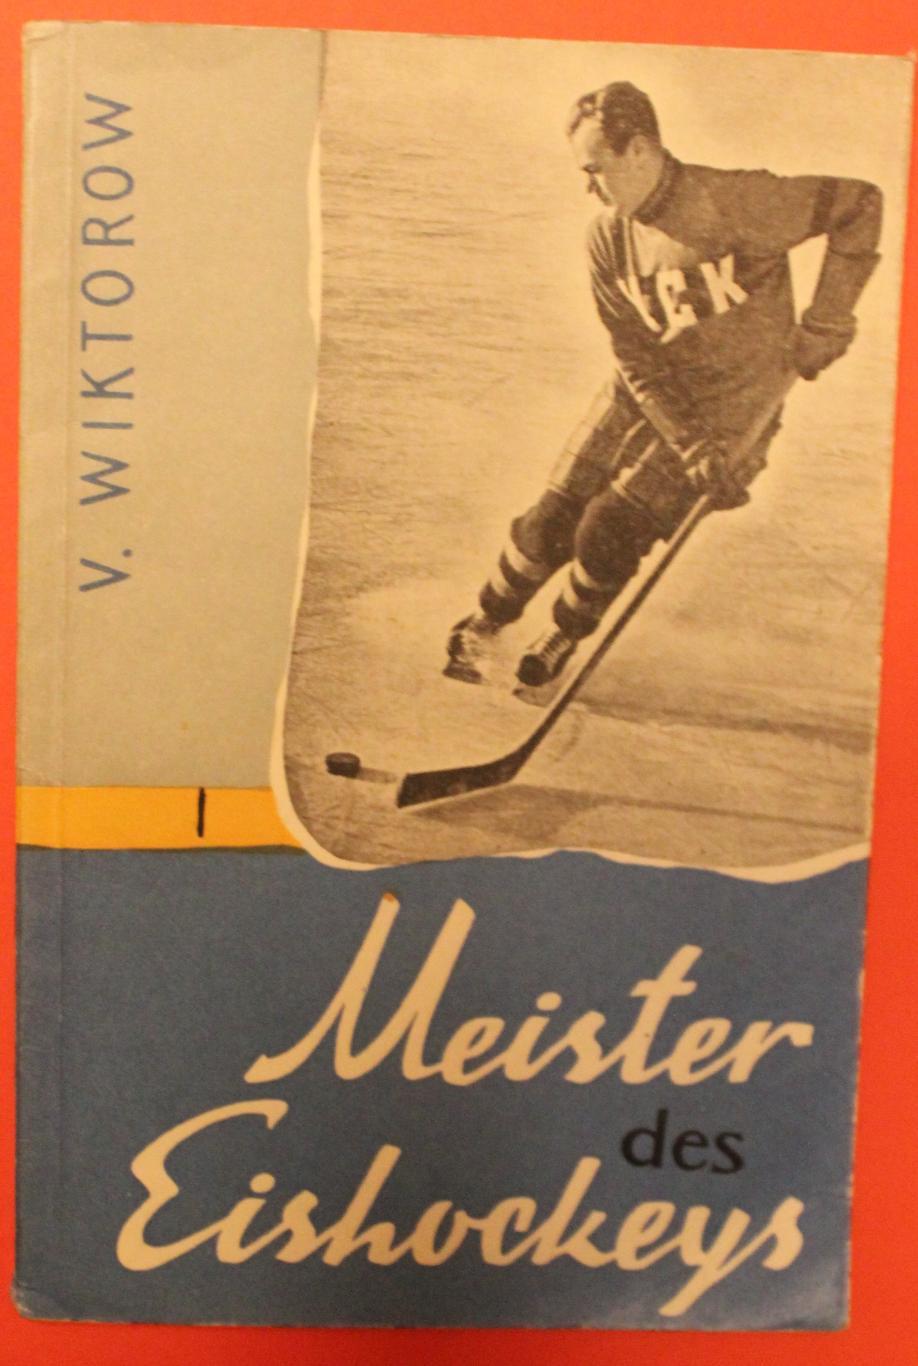 Виктор Викторов Мастер хоккея (о Всеволоде Боброве) изд. 1957 на немецком яз.